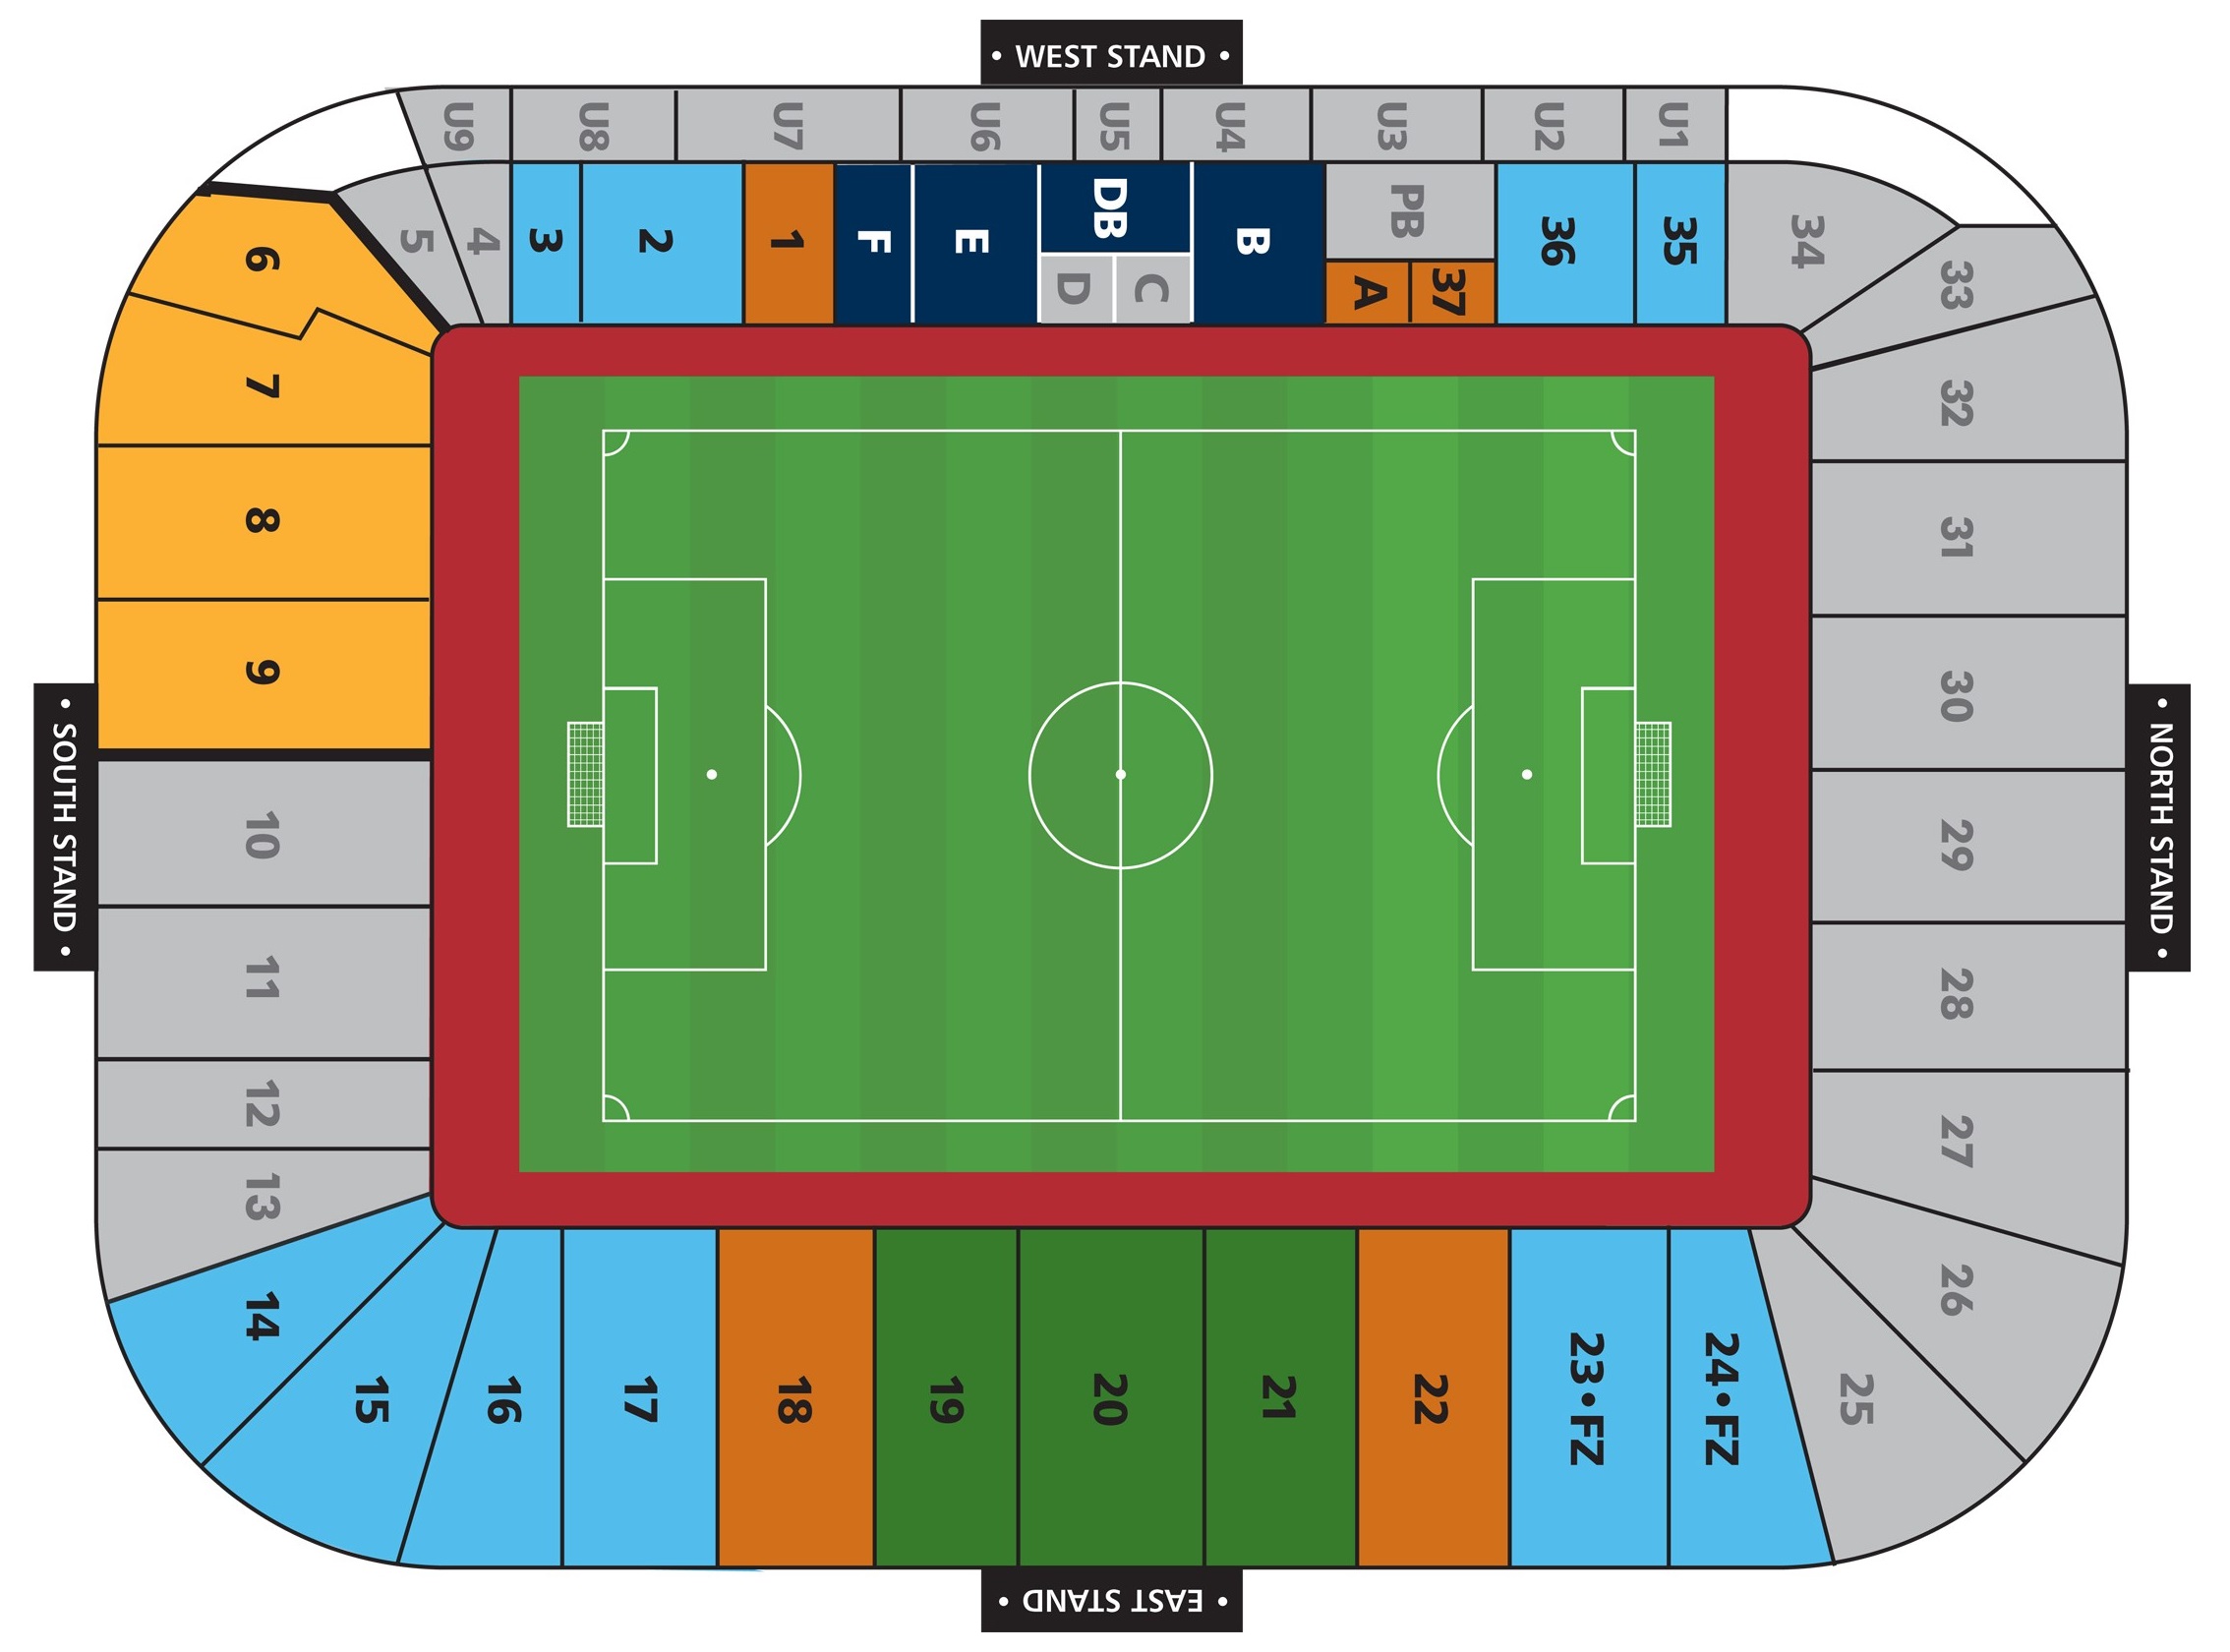 Ricoh Arena seating plan